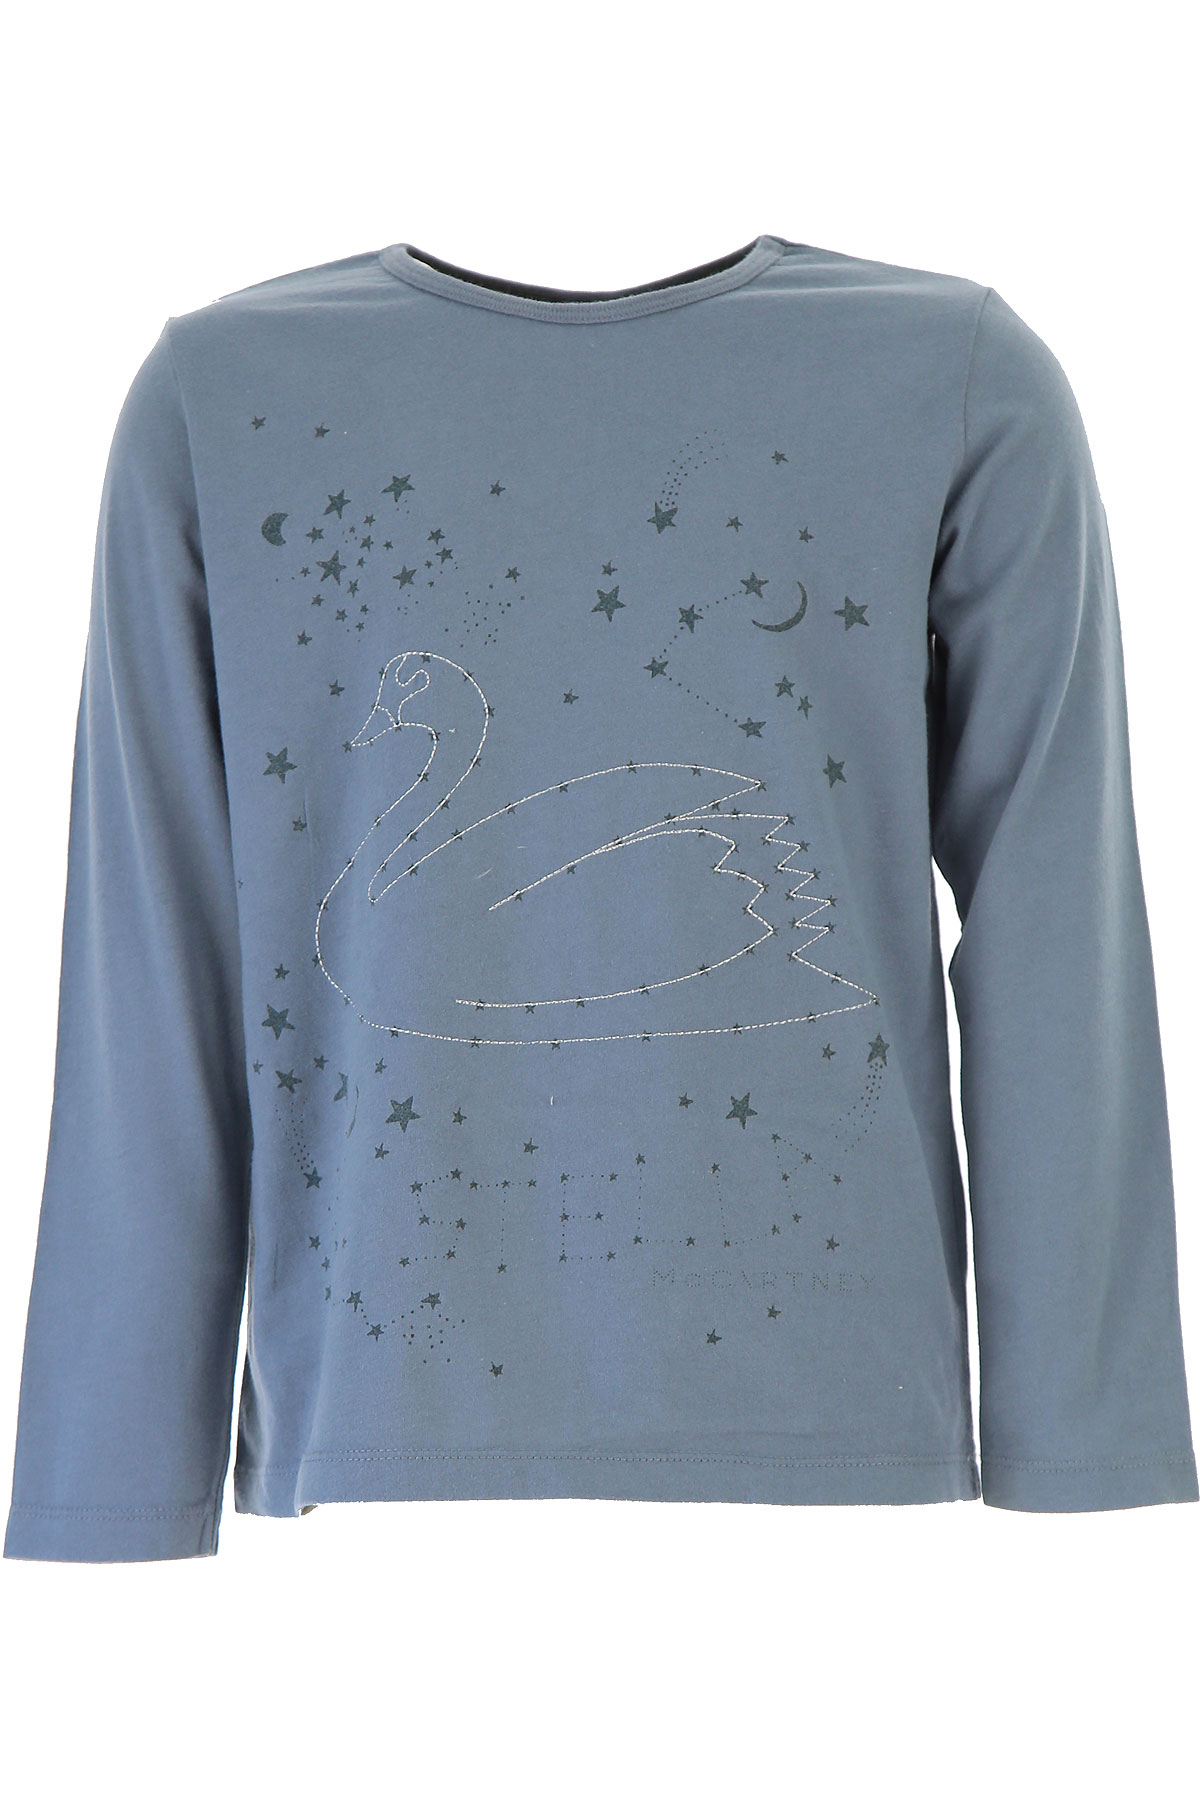 Stella McCartney Kinder T-Shirt für Mädchen Günstig im Outlet Sale, Blau, Baumwolle, 2017, 4Y 5Y